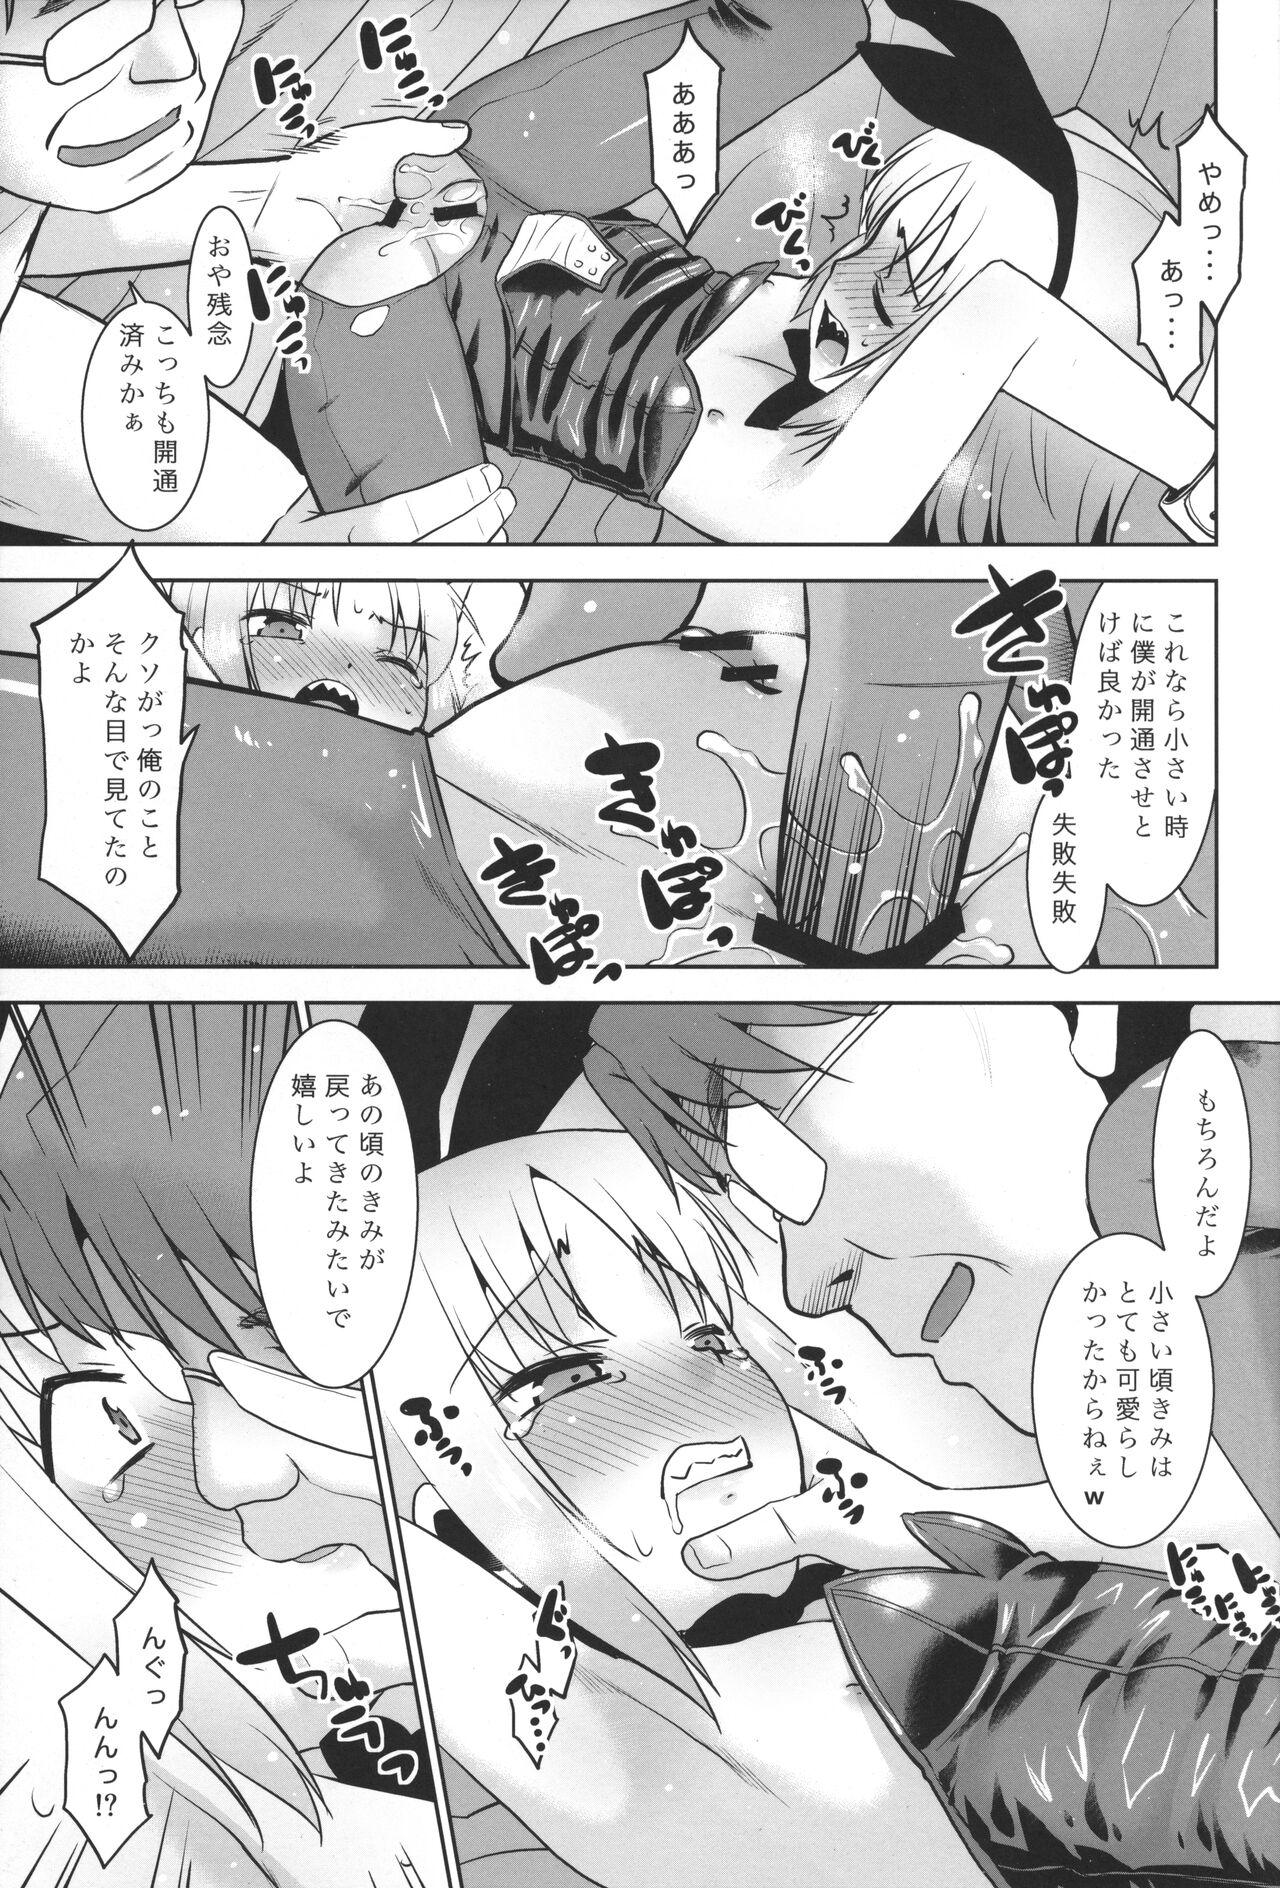 Butt Uchi no Aniki ga Onna no ko ni natta kara Minna de Mawasou ze! 2 - Original Gaypawn - Page 10